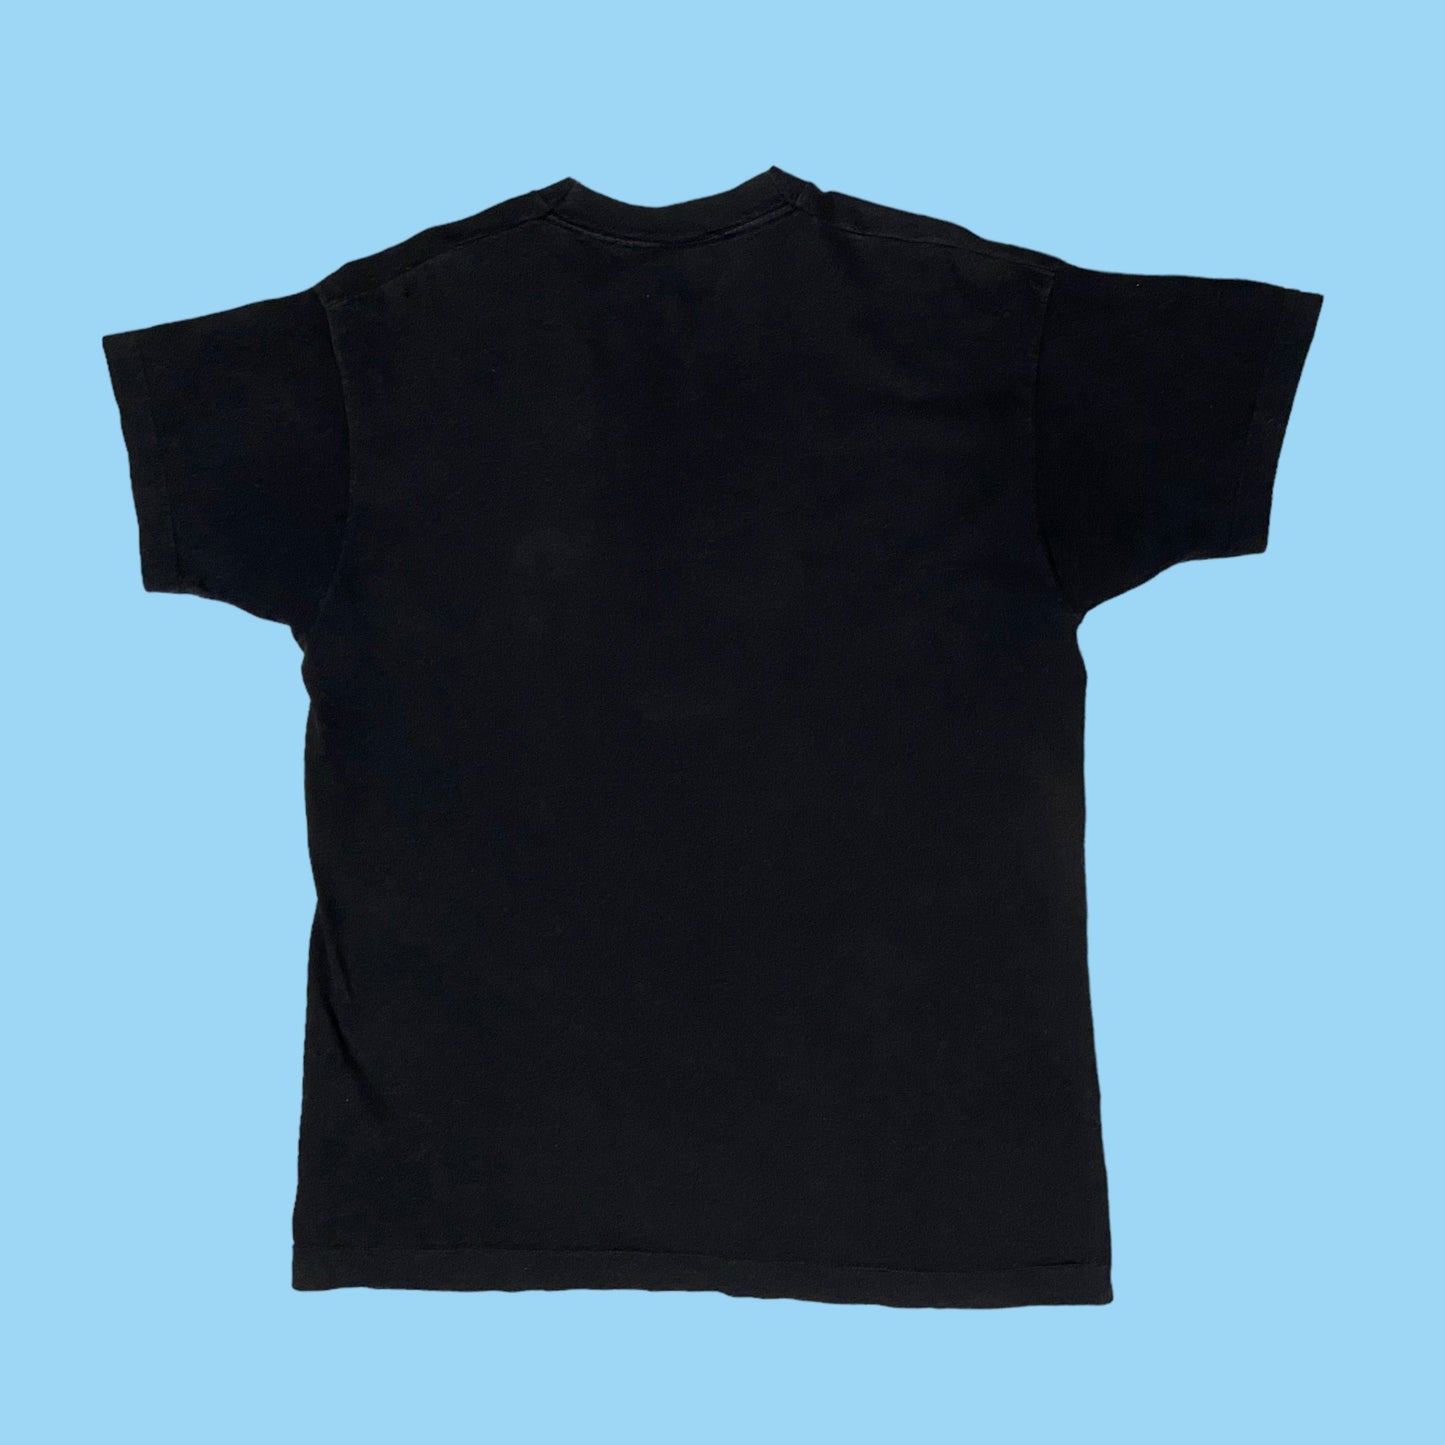 Vintage 1994 Carolina Panthers Black Panther t-shirt - L